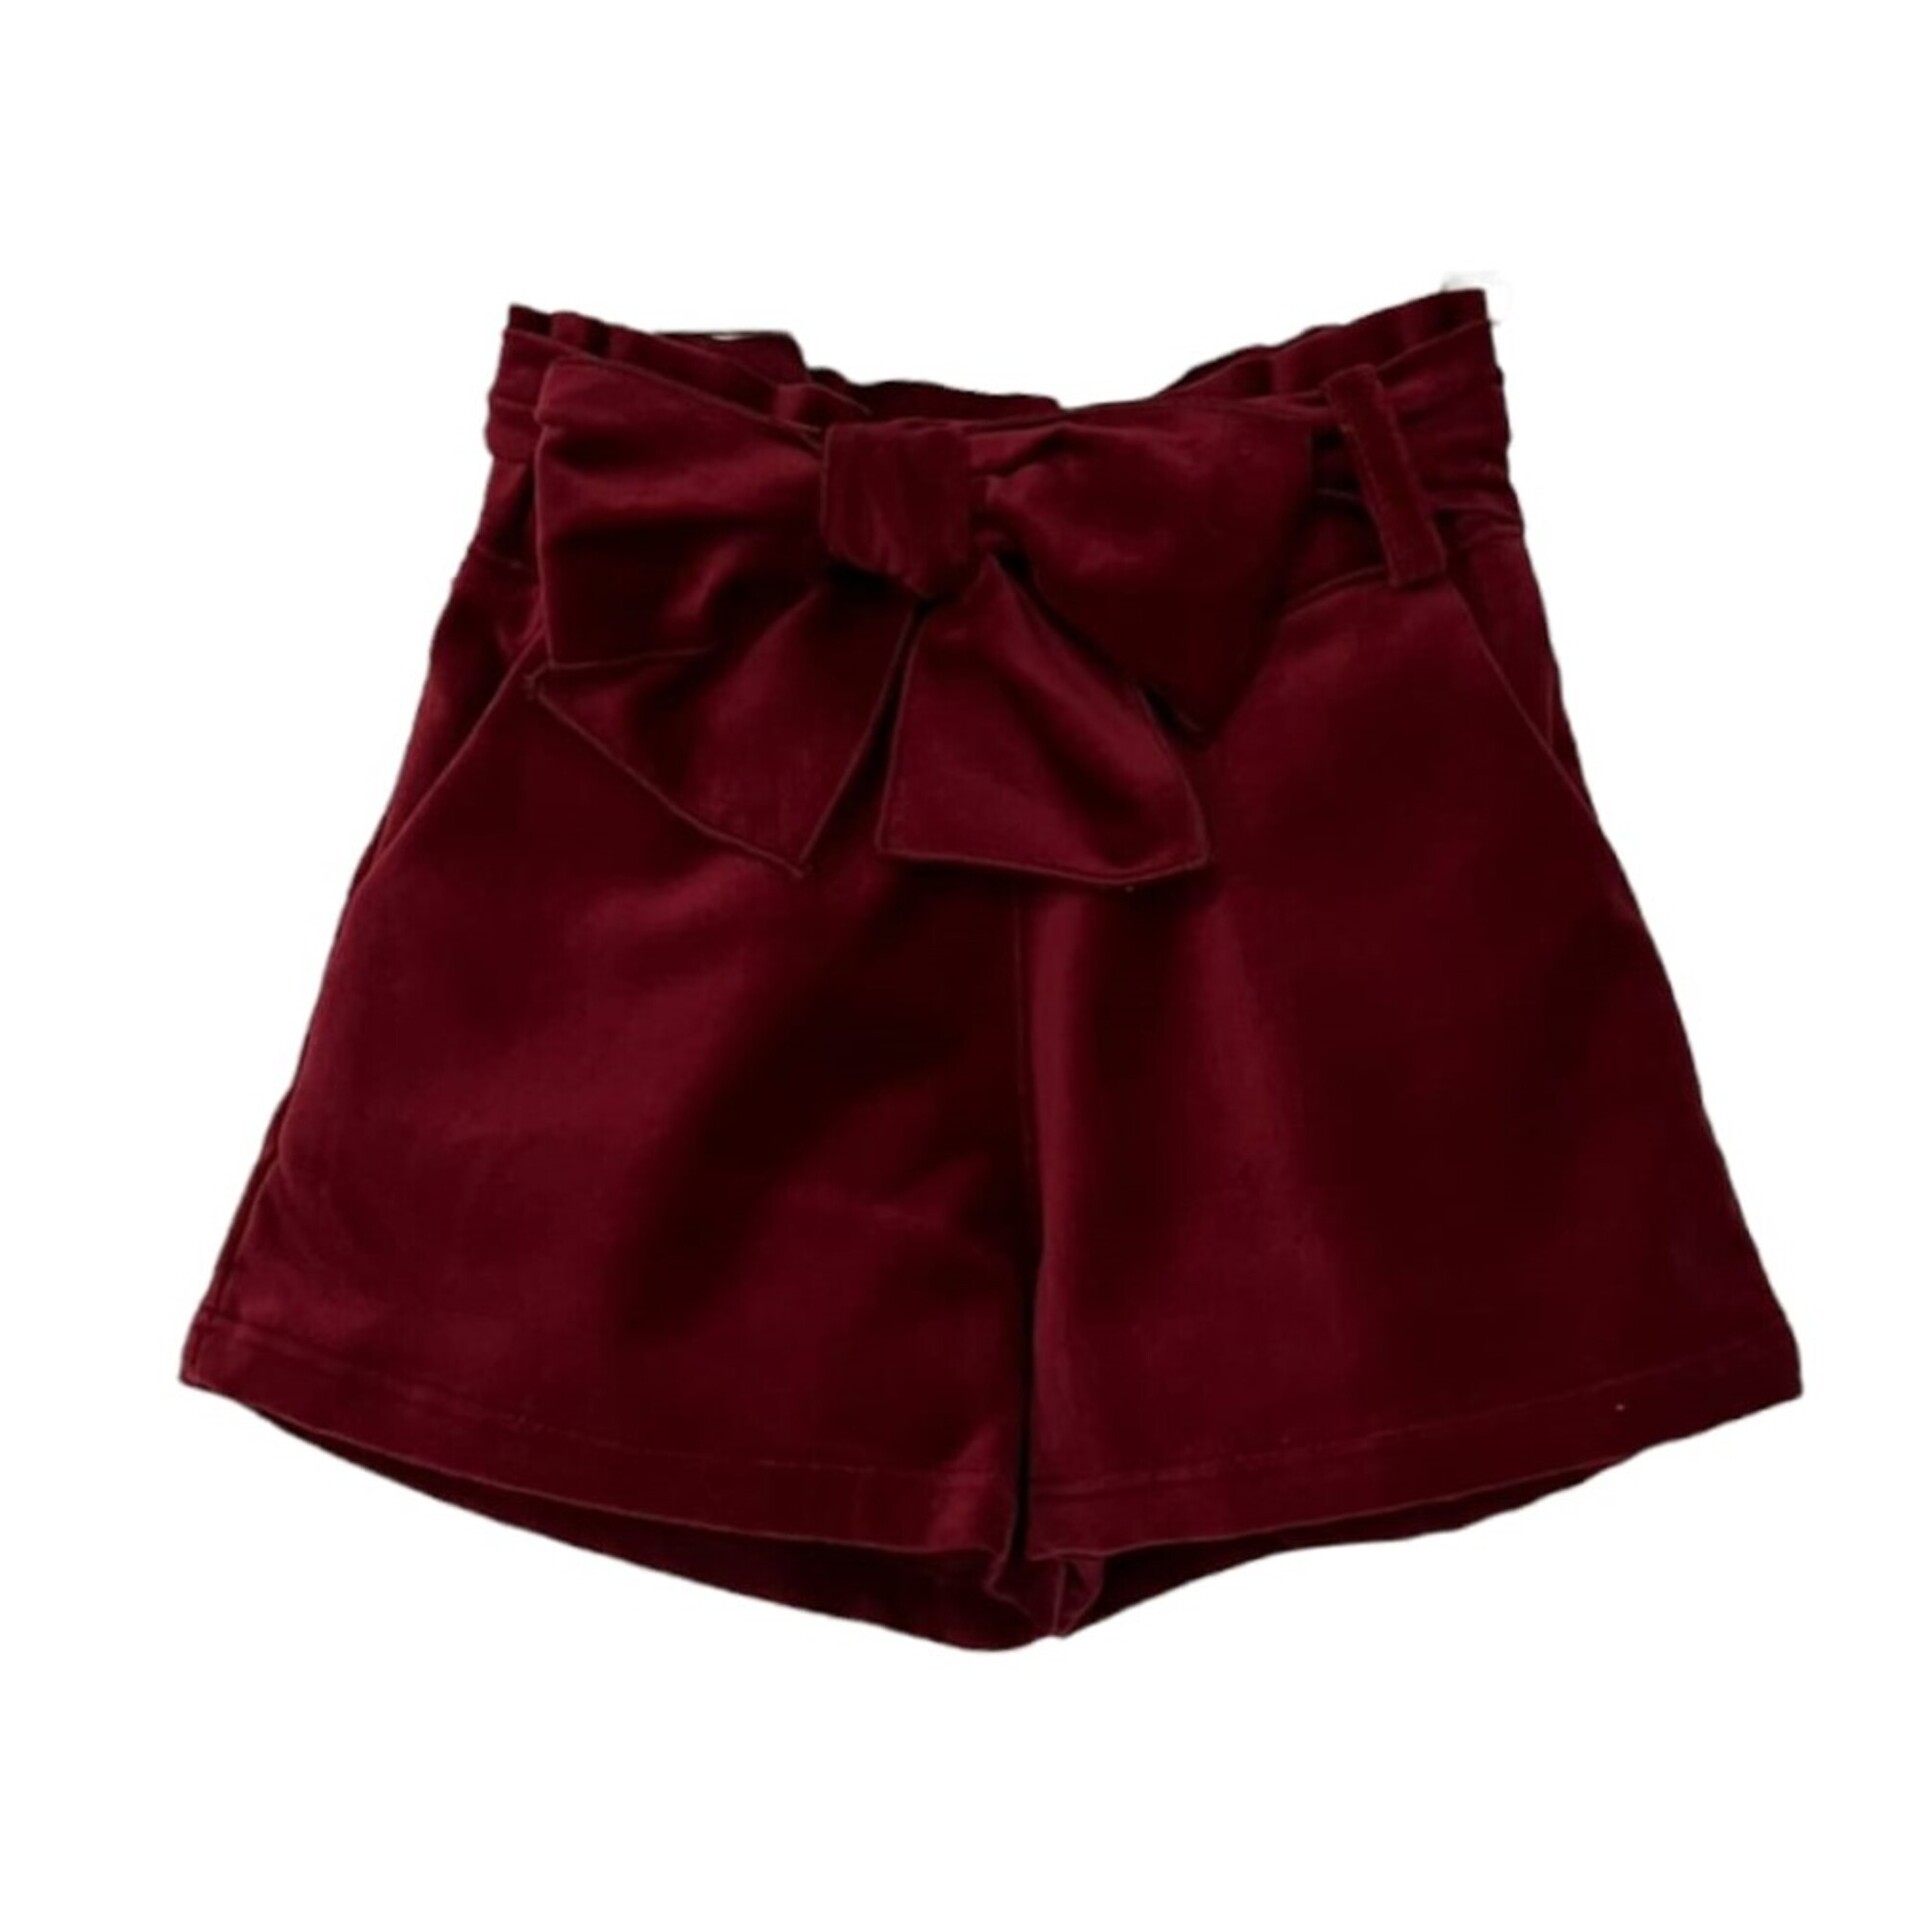 Bordeaux velvet shorts